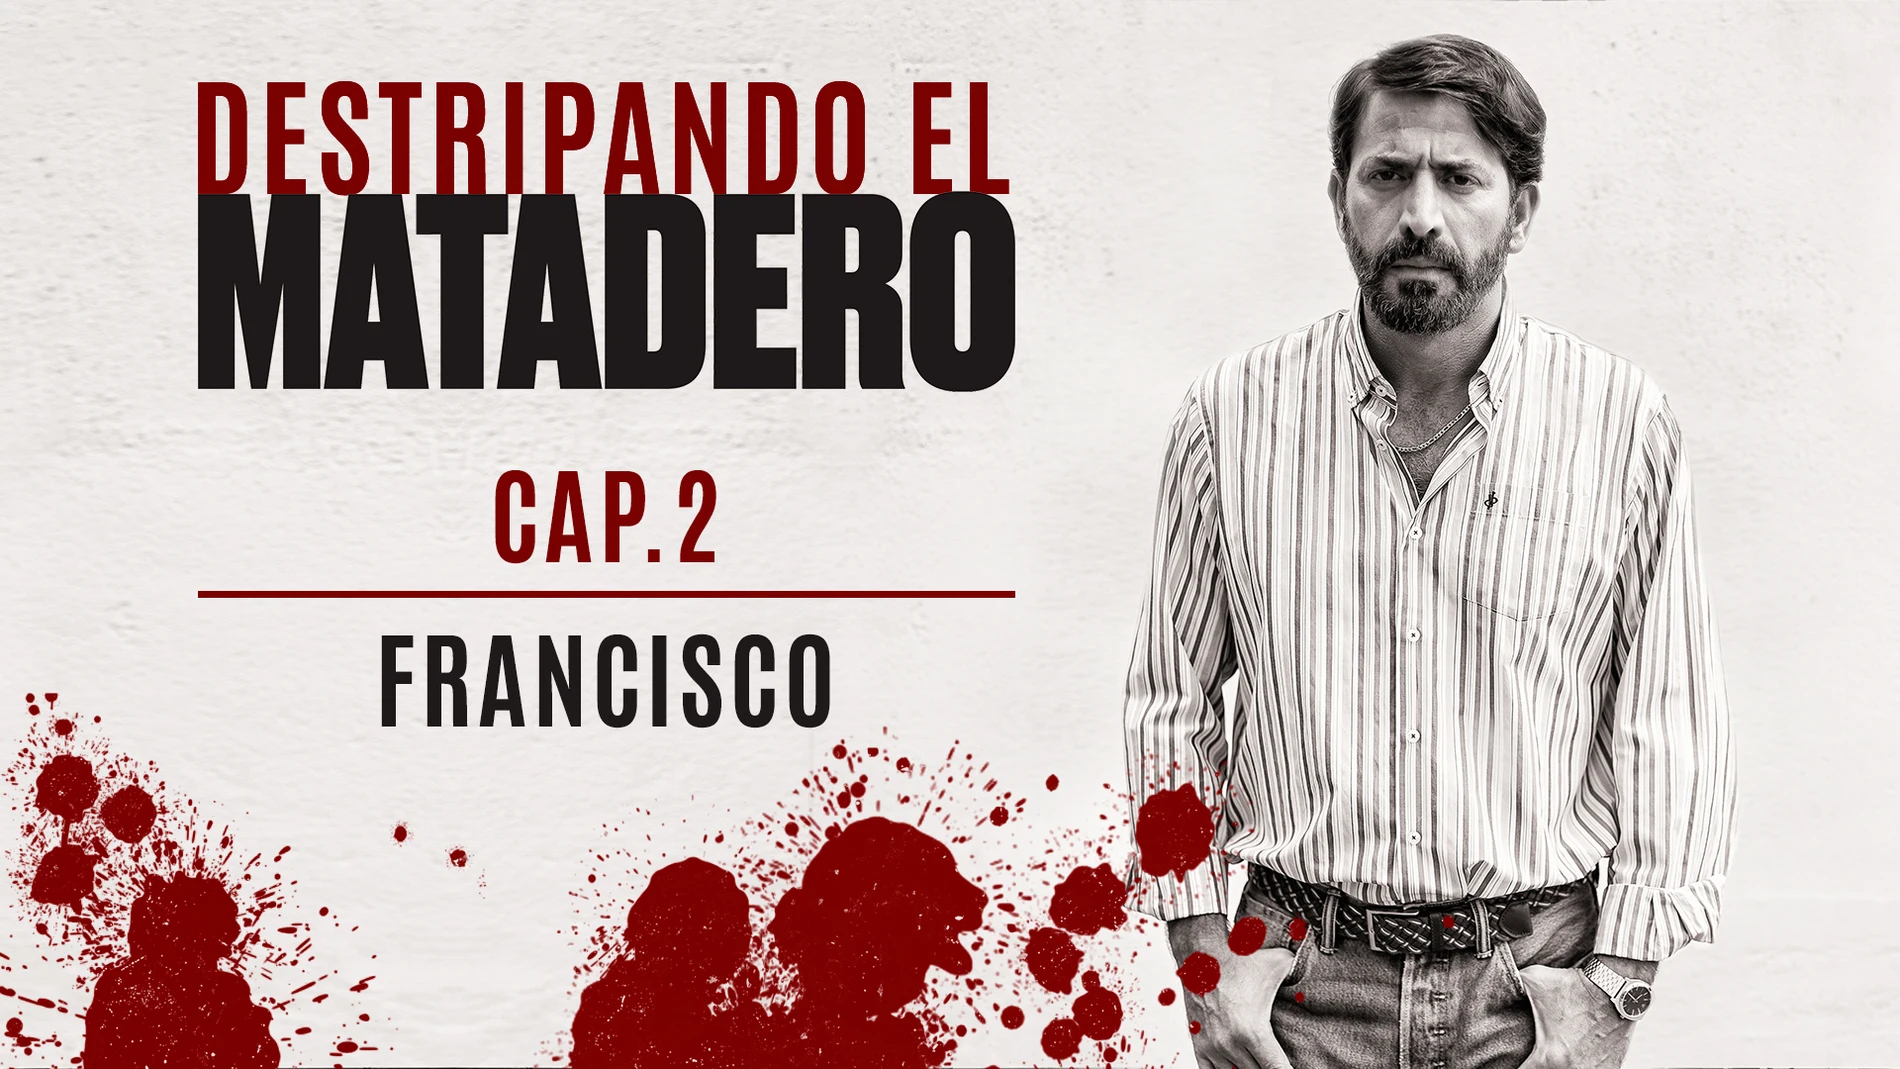 Francisco: "Almudena me mató, pero mi venganza está servida"